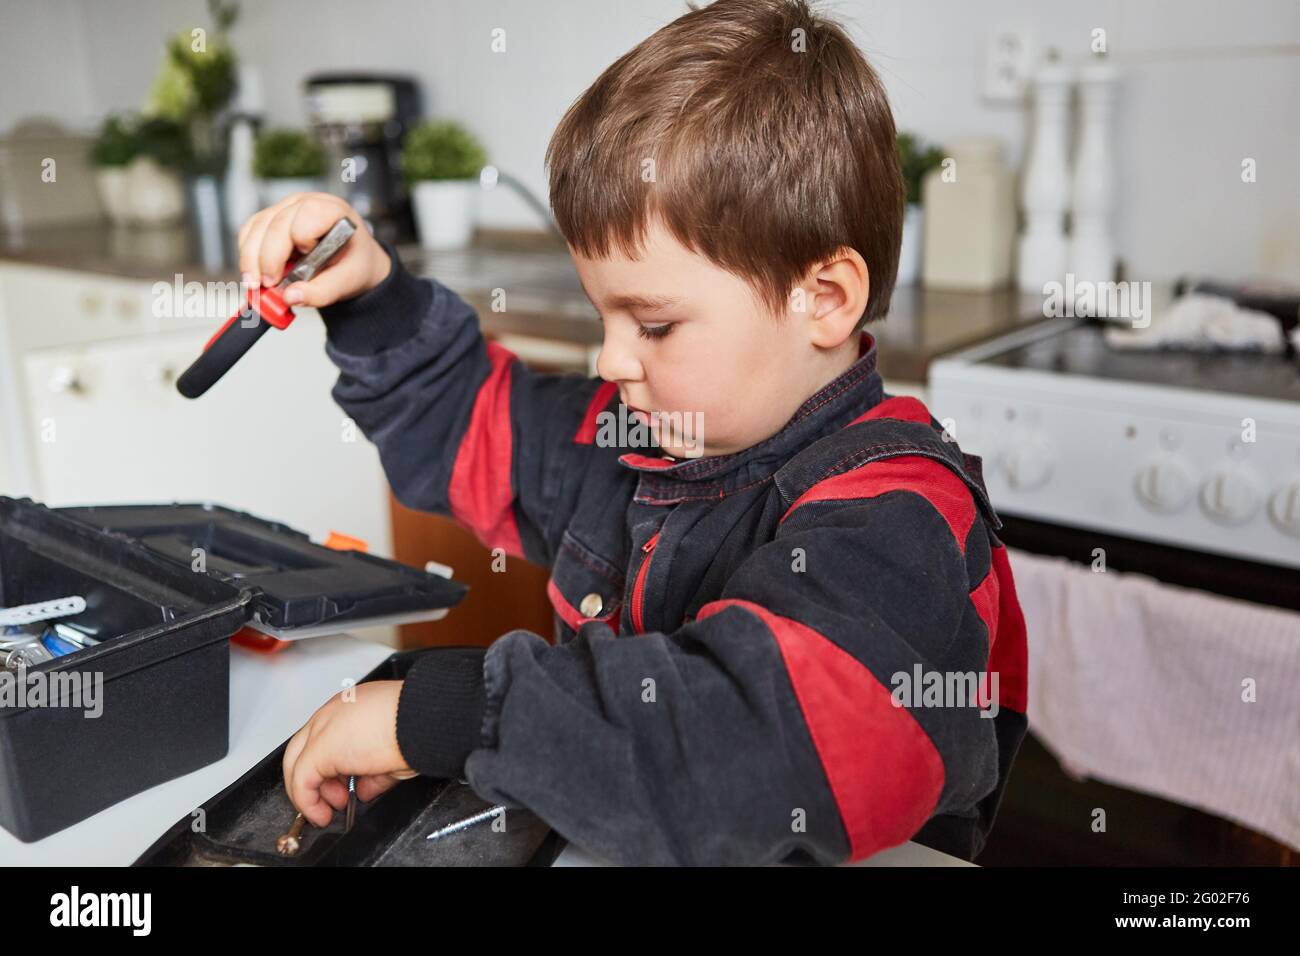 Das Kind spielt Handwerker oder Klempner und trägt den Werkzeugkasten auf Stockfoto